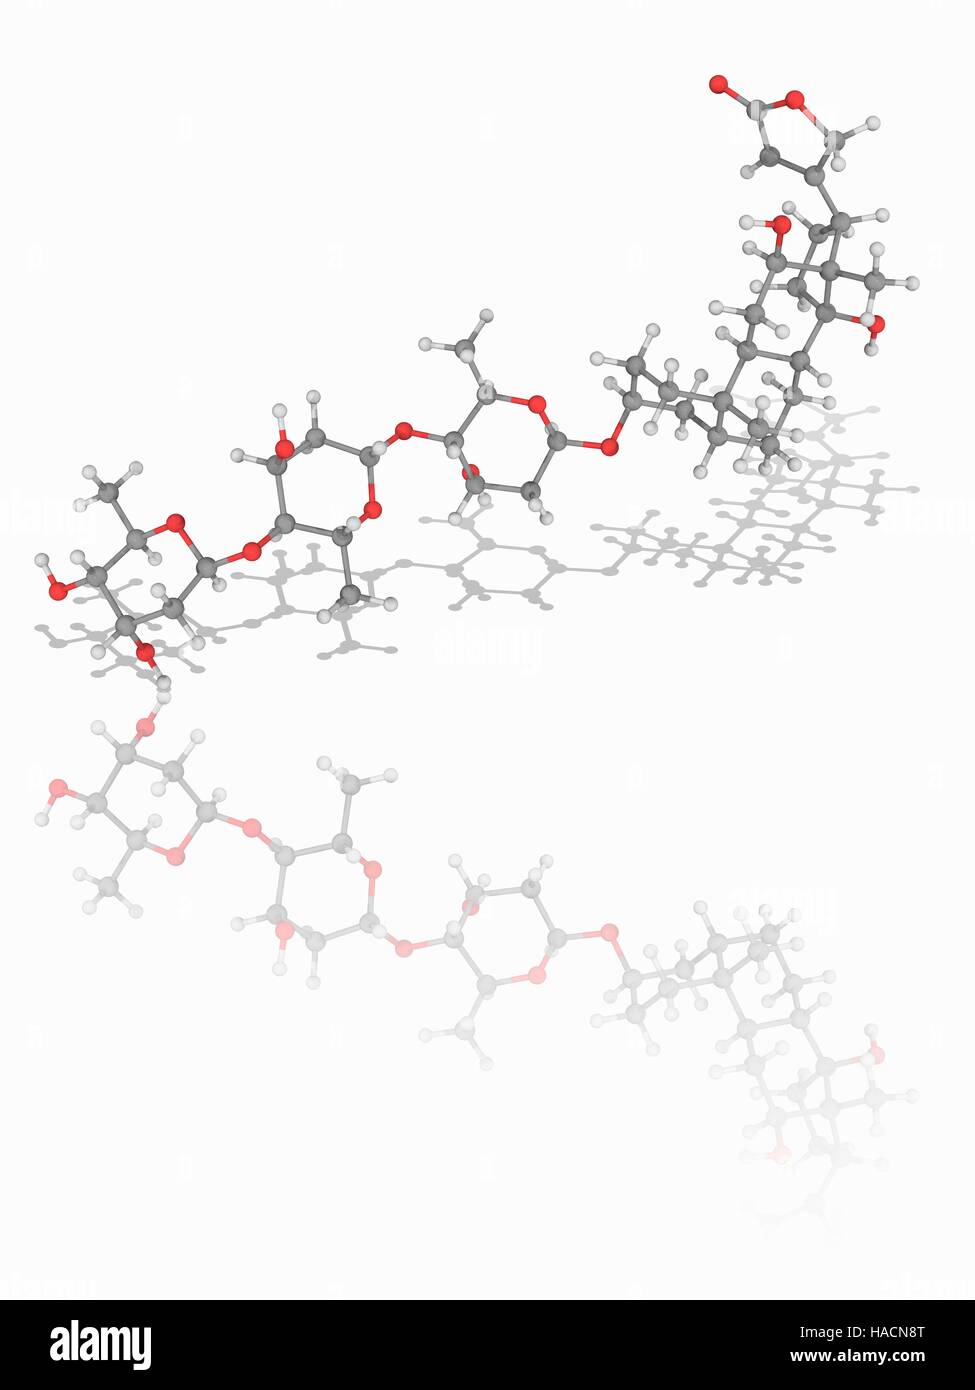 Digossina. Il modello molecolare del cuore farmaco digossina (C41.H64.O14), un glicoside cardiaco estratto dalla pianta foxglove (Digitalis lanata). Questo farmaco è ampiamente utilizzato nel trattamento di varie condizioni del cuore. Gli atomi sono rappresentati da sfere e sono codificati a colori: carbonio (grigio), Idrogeno (bianco) e ossigeno (rosso). Illustrazione. Foto Stock